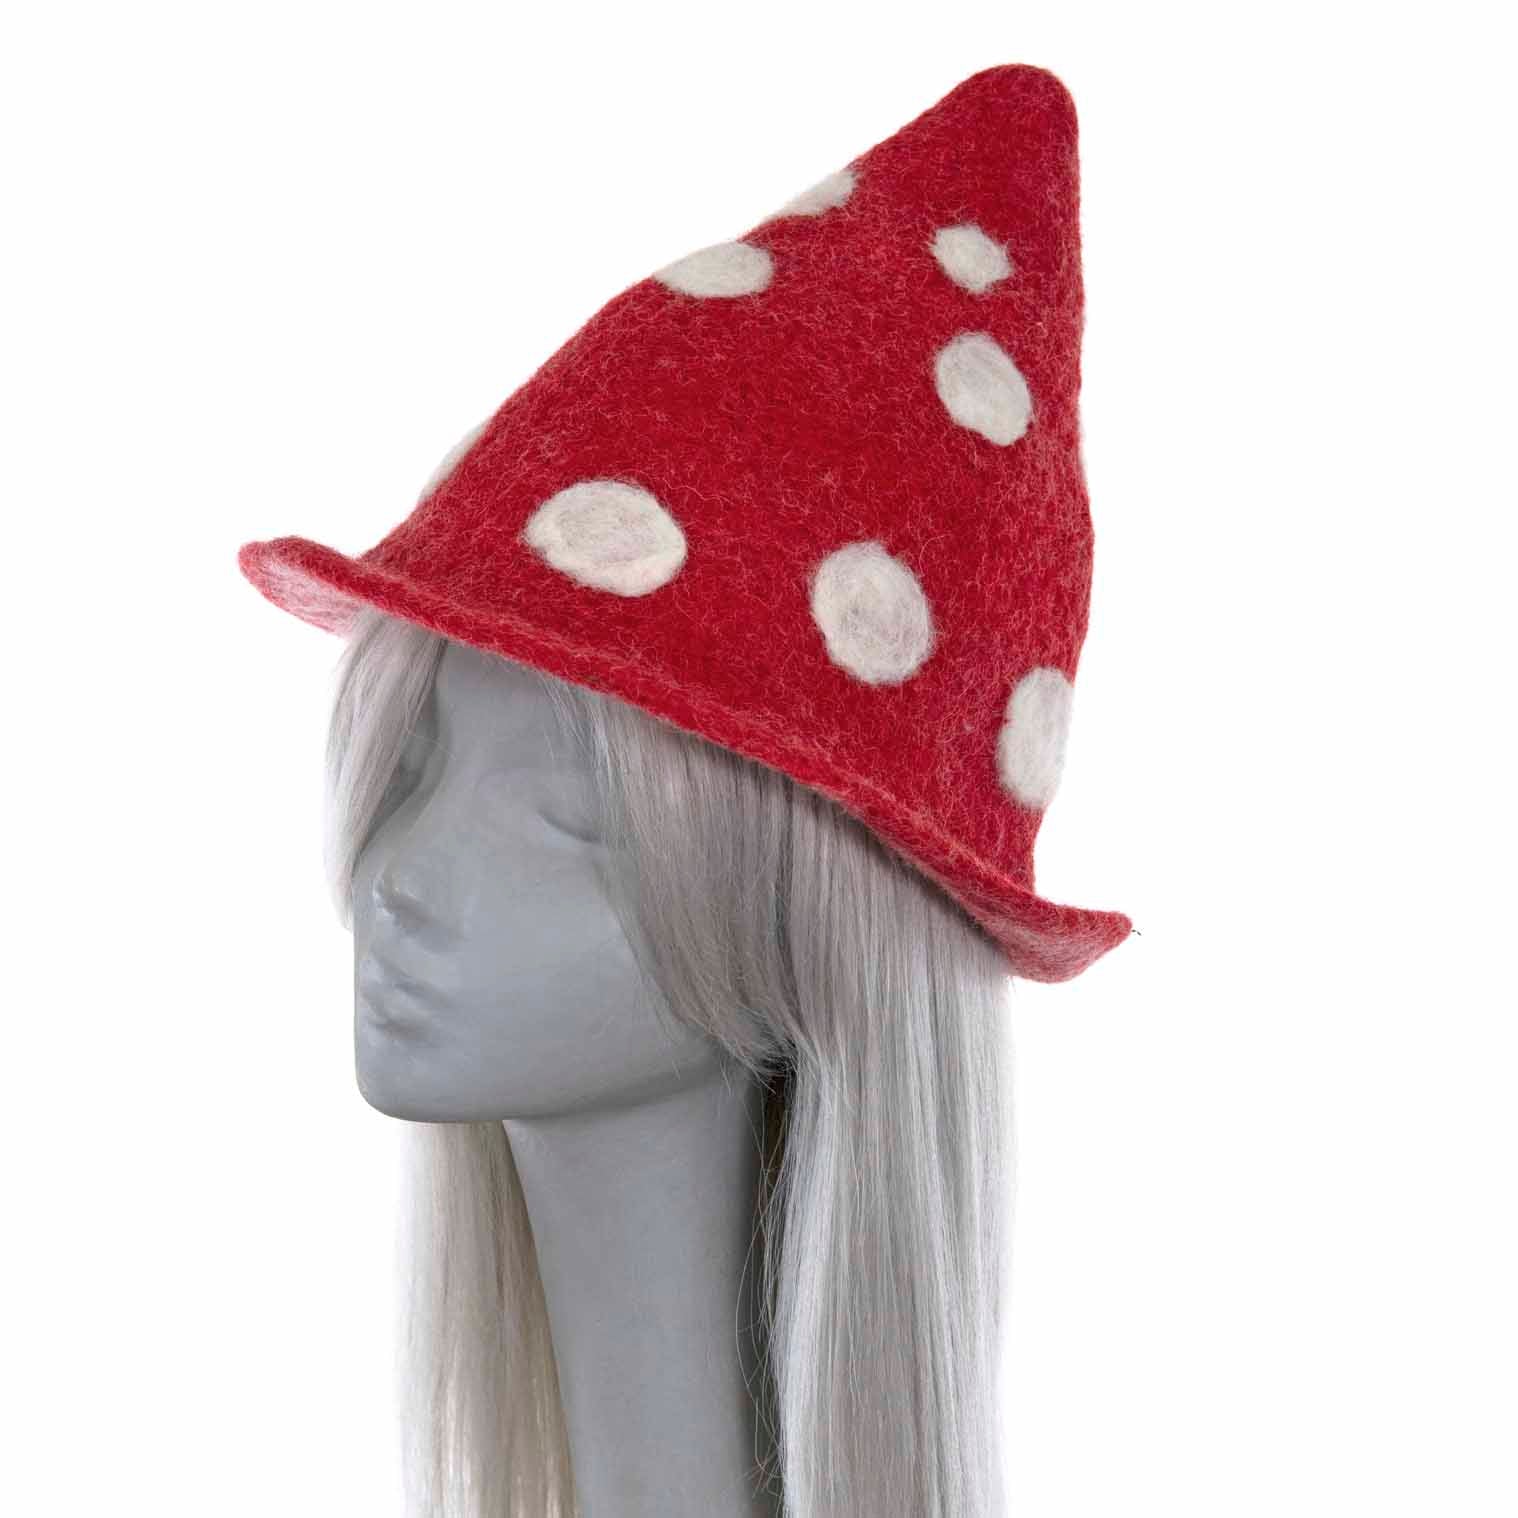 dotted mushroom shape hat felt